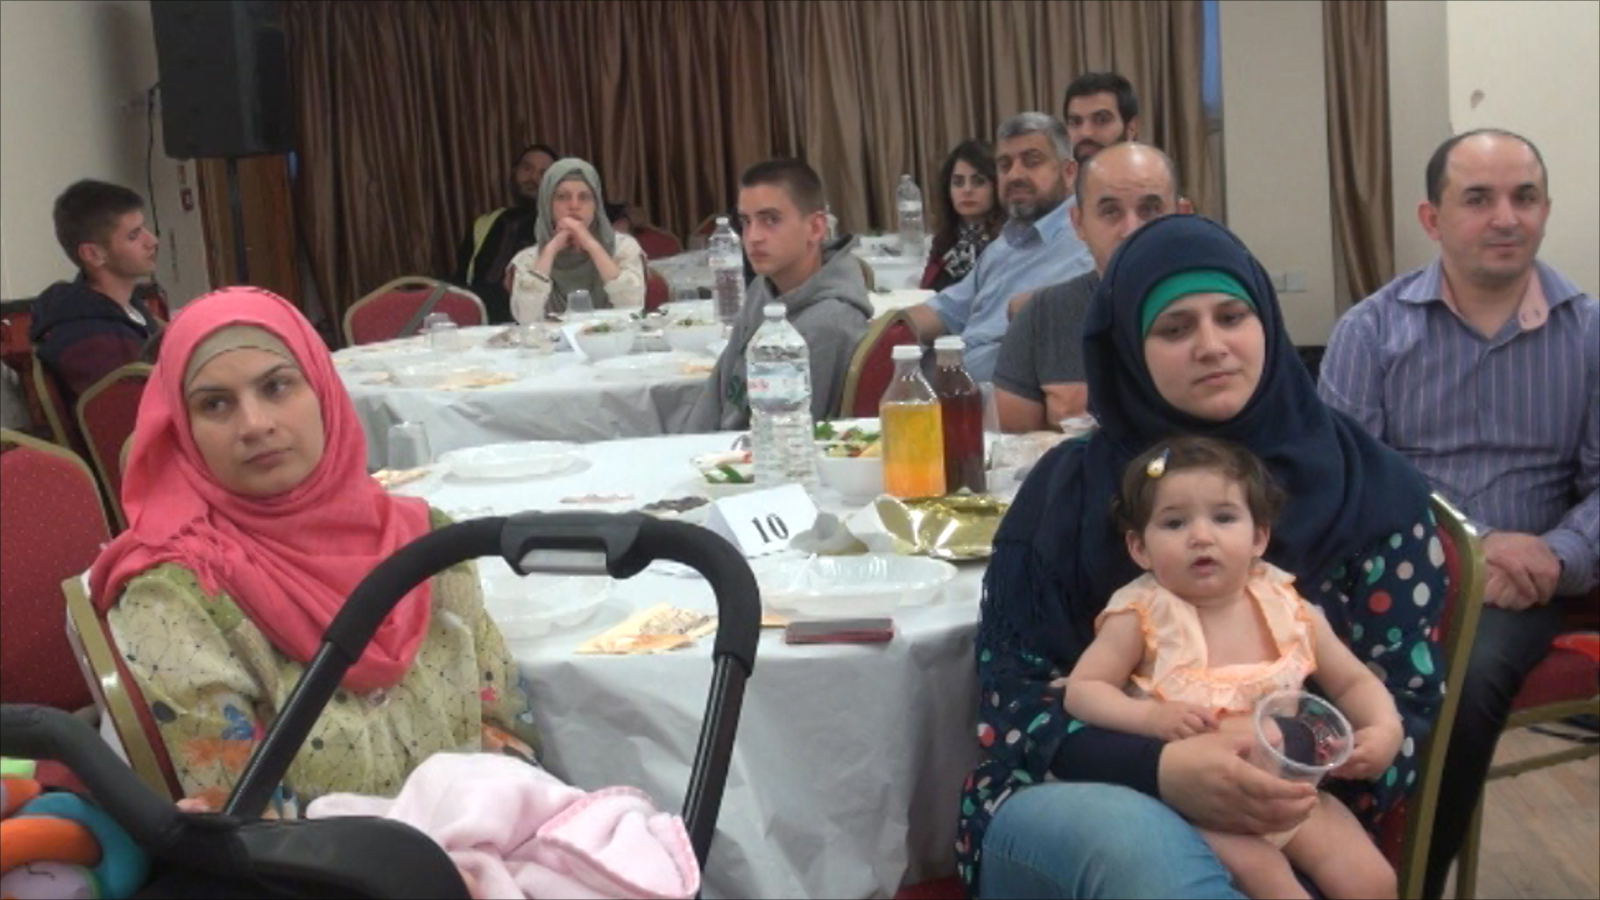 مائدة الإفطار الرمضانية جمعت العائلات من شتى الجنسيات العربية (الجزيرة)